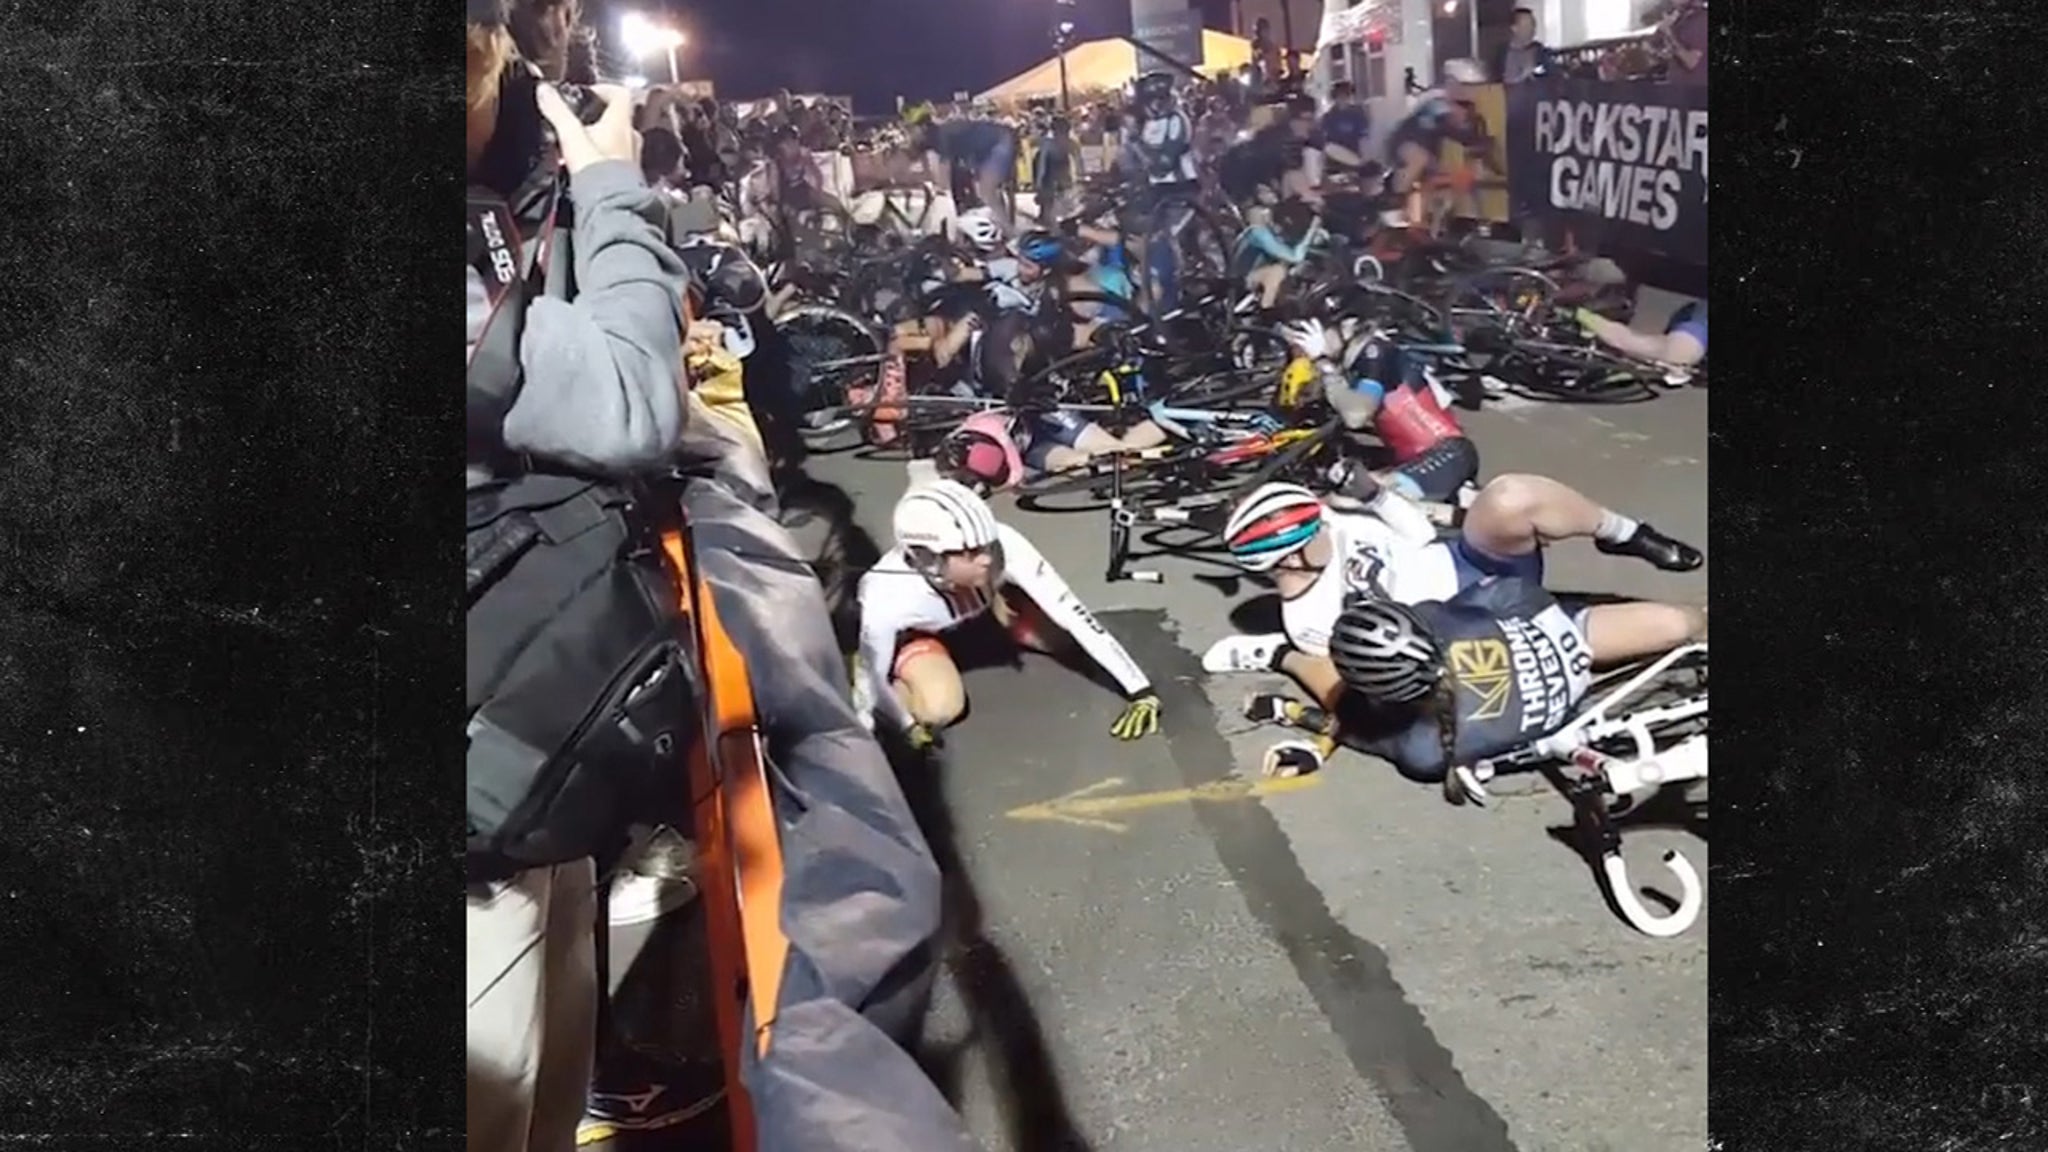 NYC CYCLING RACE MASSIVE BIKE CRASH CAUGHT ON VIDEO - A81829ff9bc05cb487827e28910D0b4c Xl